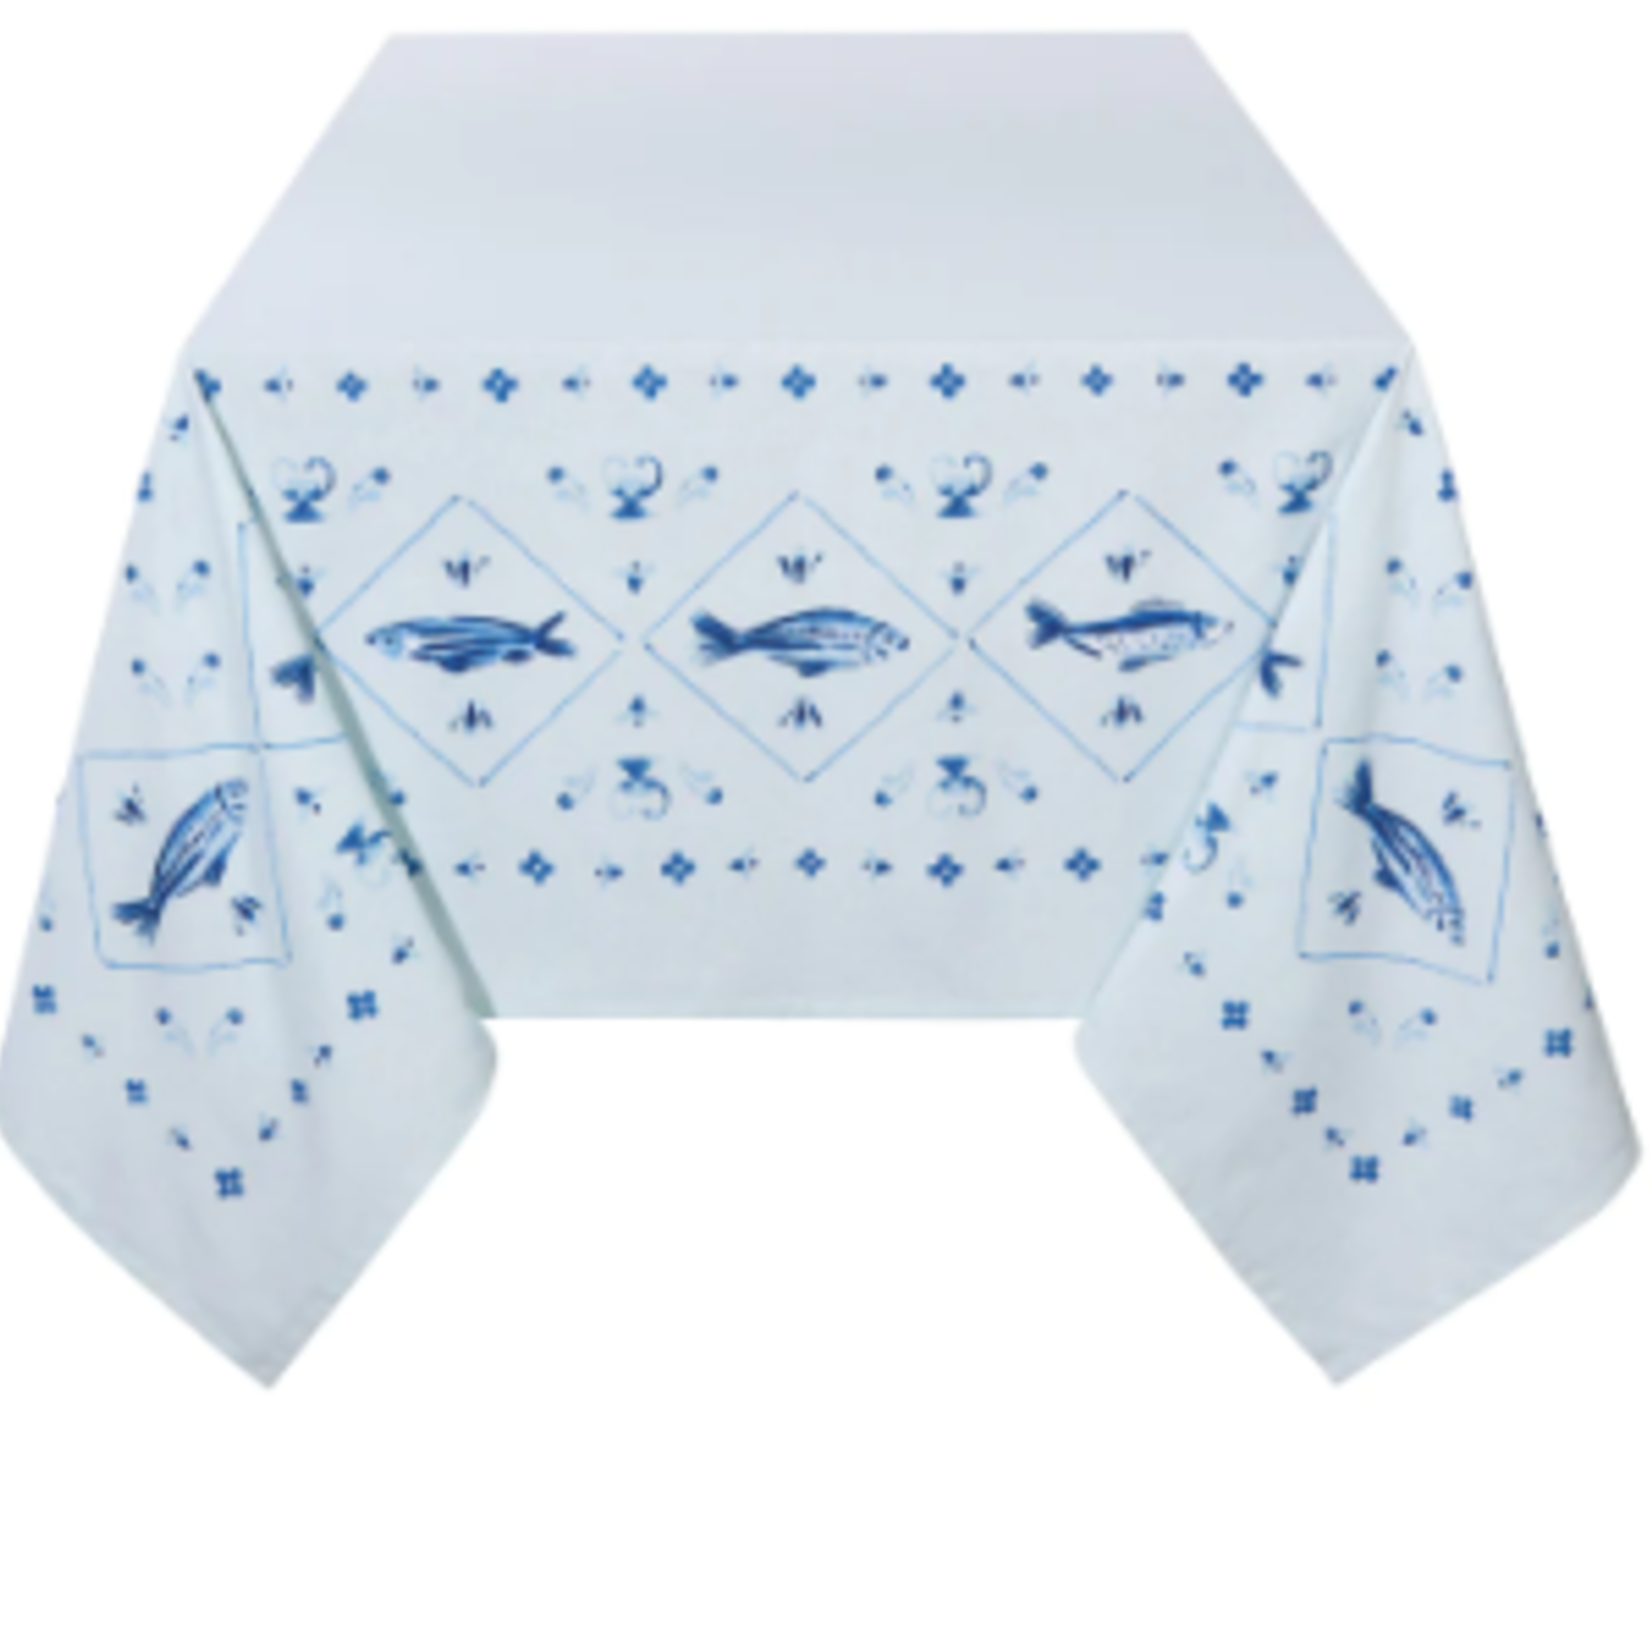 Now Designs Tablecloth 60 x 90" - Aveiro